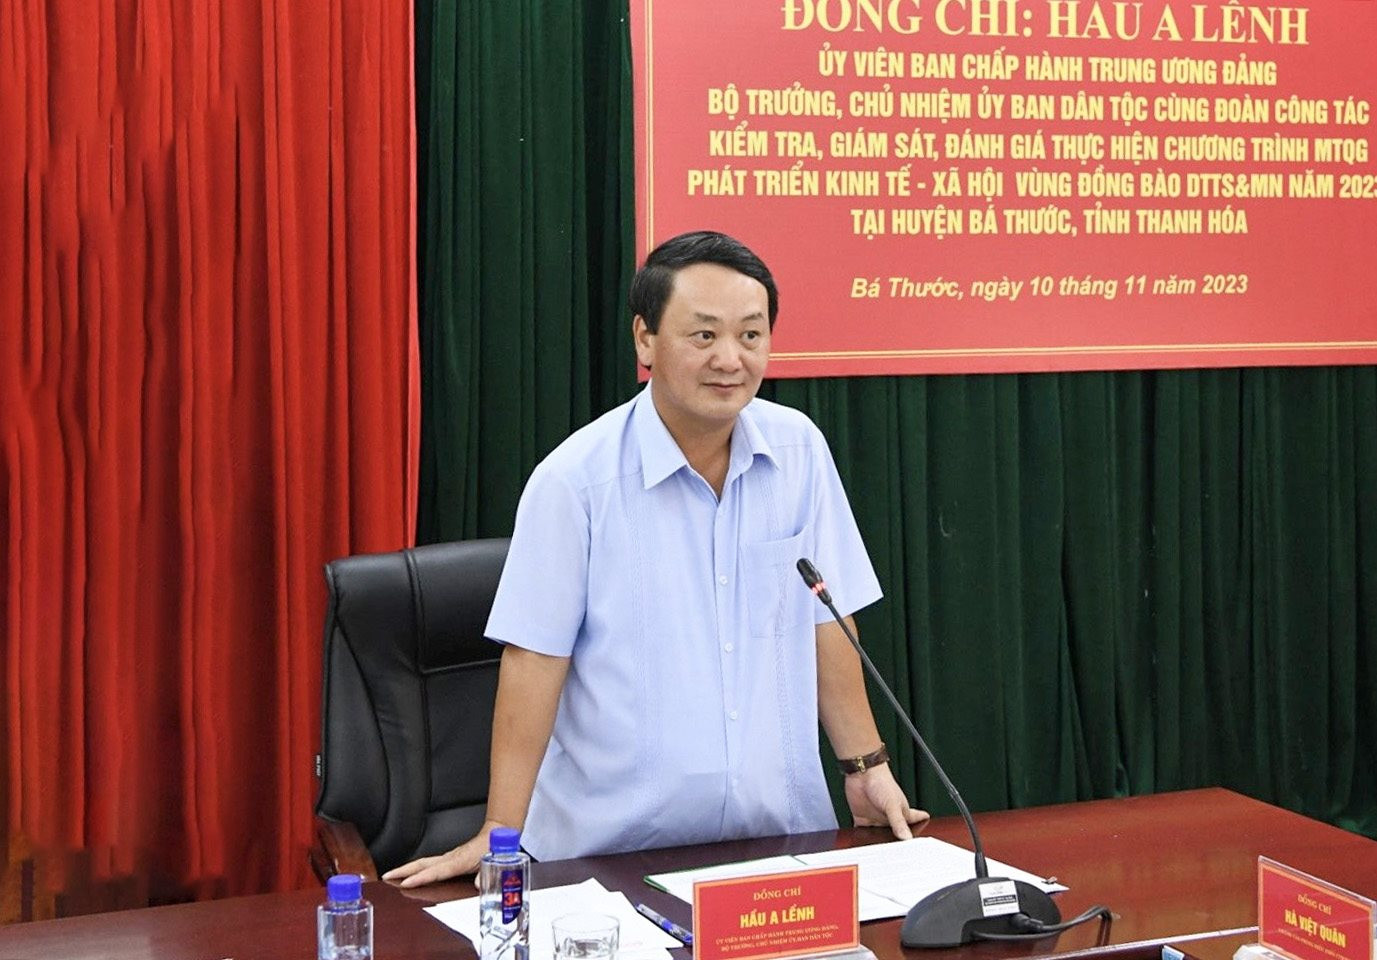 Bộ trưởng, Chủ nhiệm Ủy ban Dân tộc Hầu A Lềnh kiểm tra, đánh giá việc thực hiện Chương trình MTQG 1719 tại Thanh Hóa